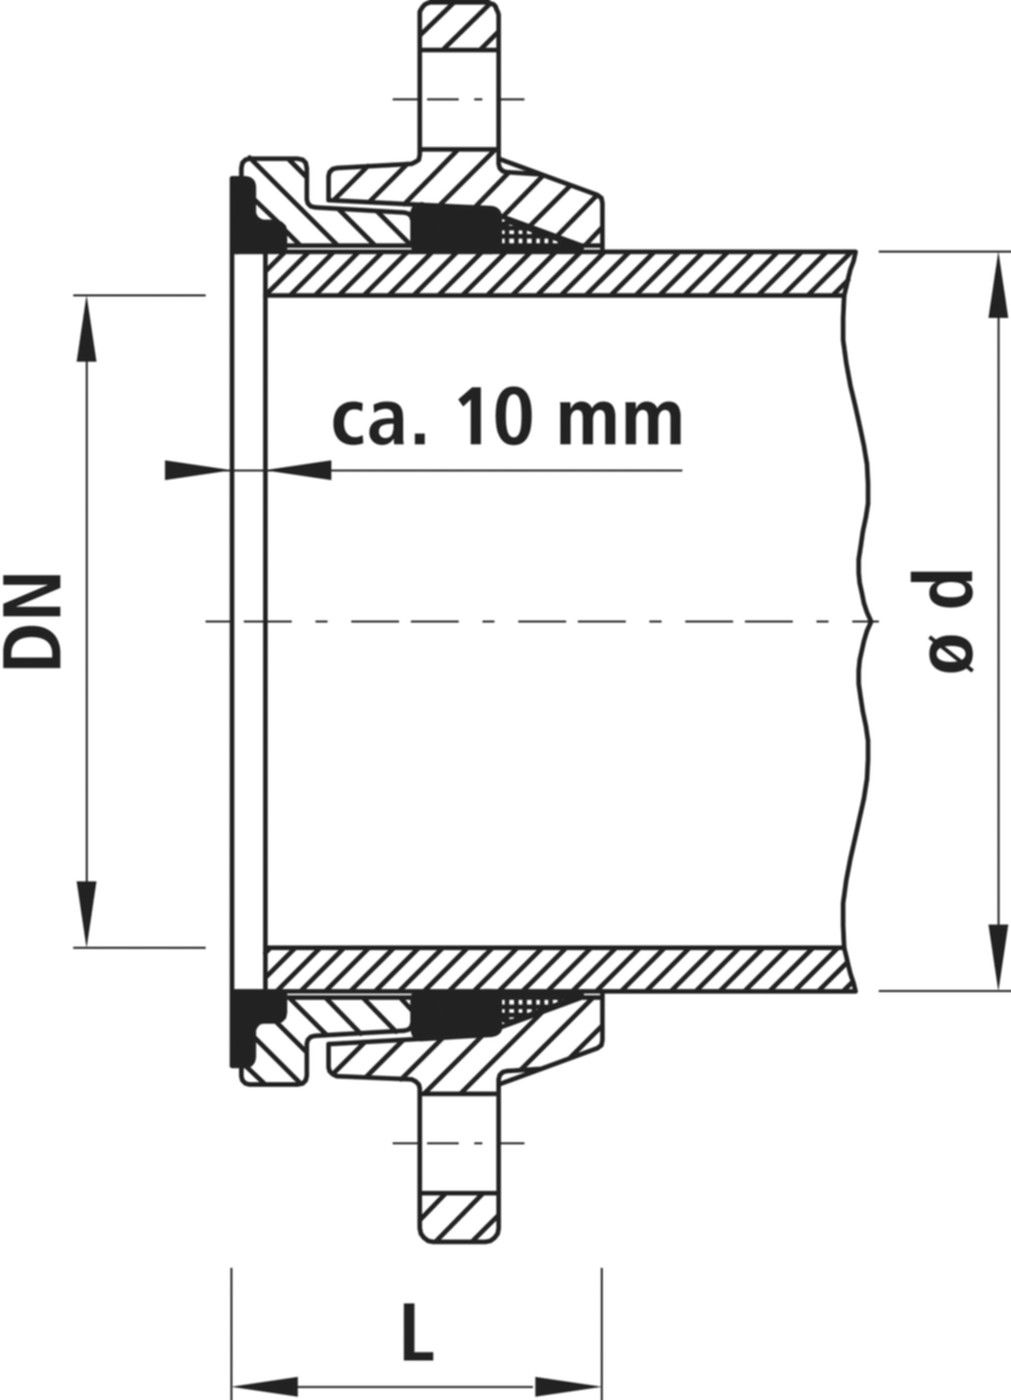 Zweikammer-Flansch für Stahlrohre 7150 schubsicher, PN 10/16 DN 50 / AD 60mm - Hawle Flanschformstücke